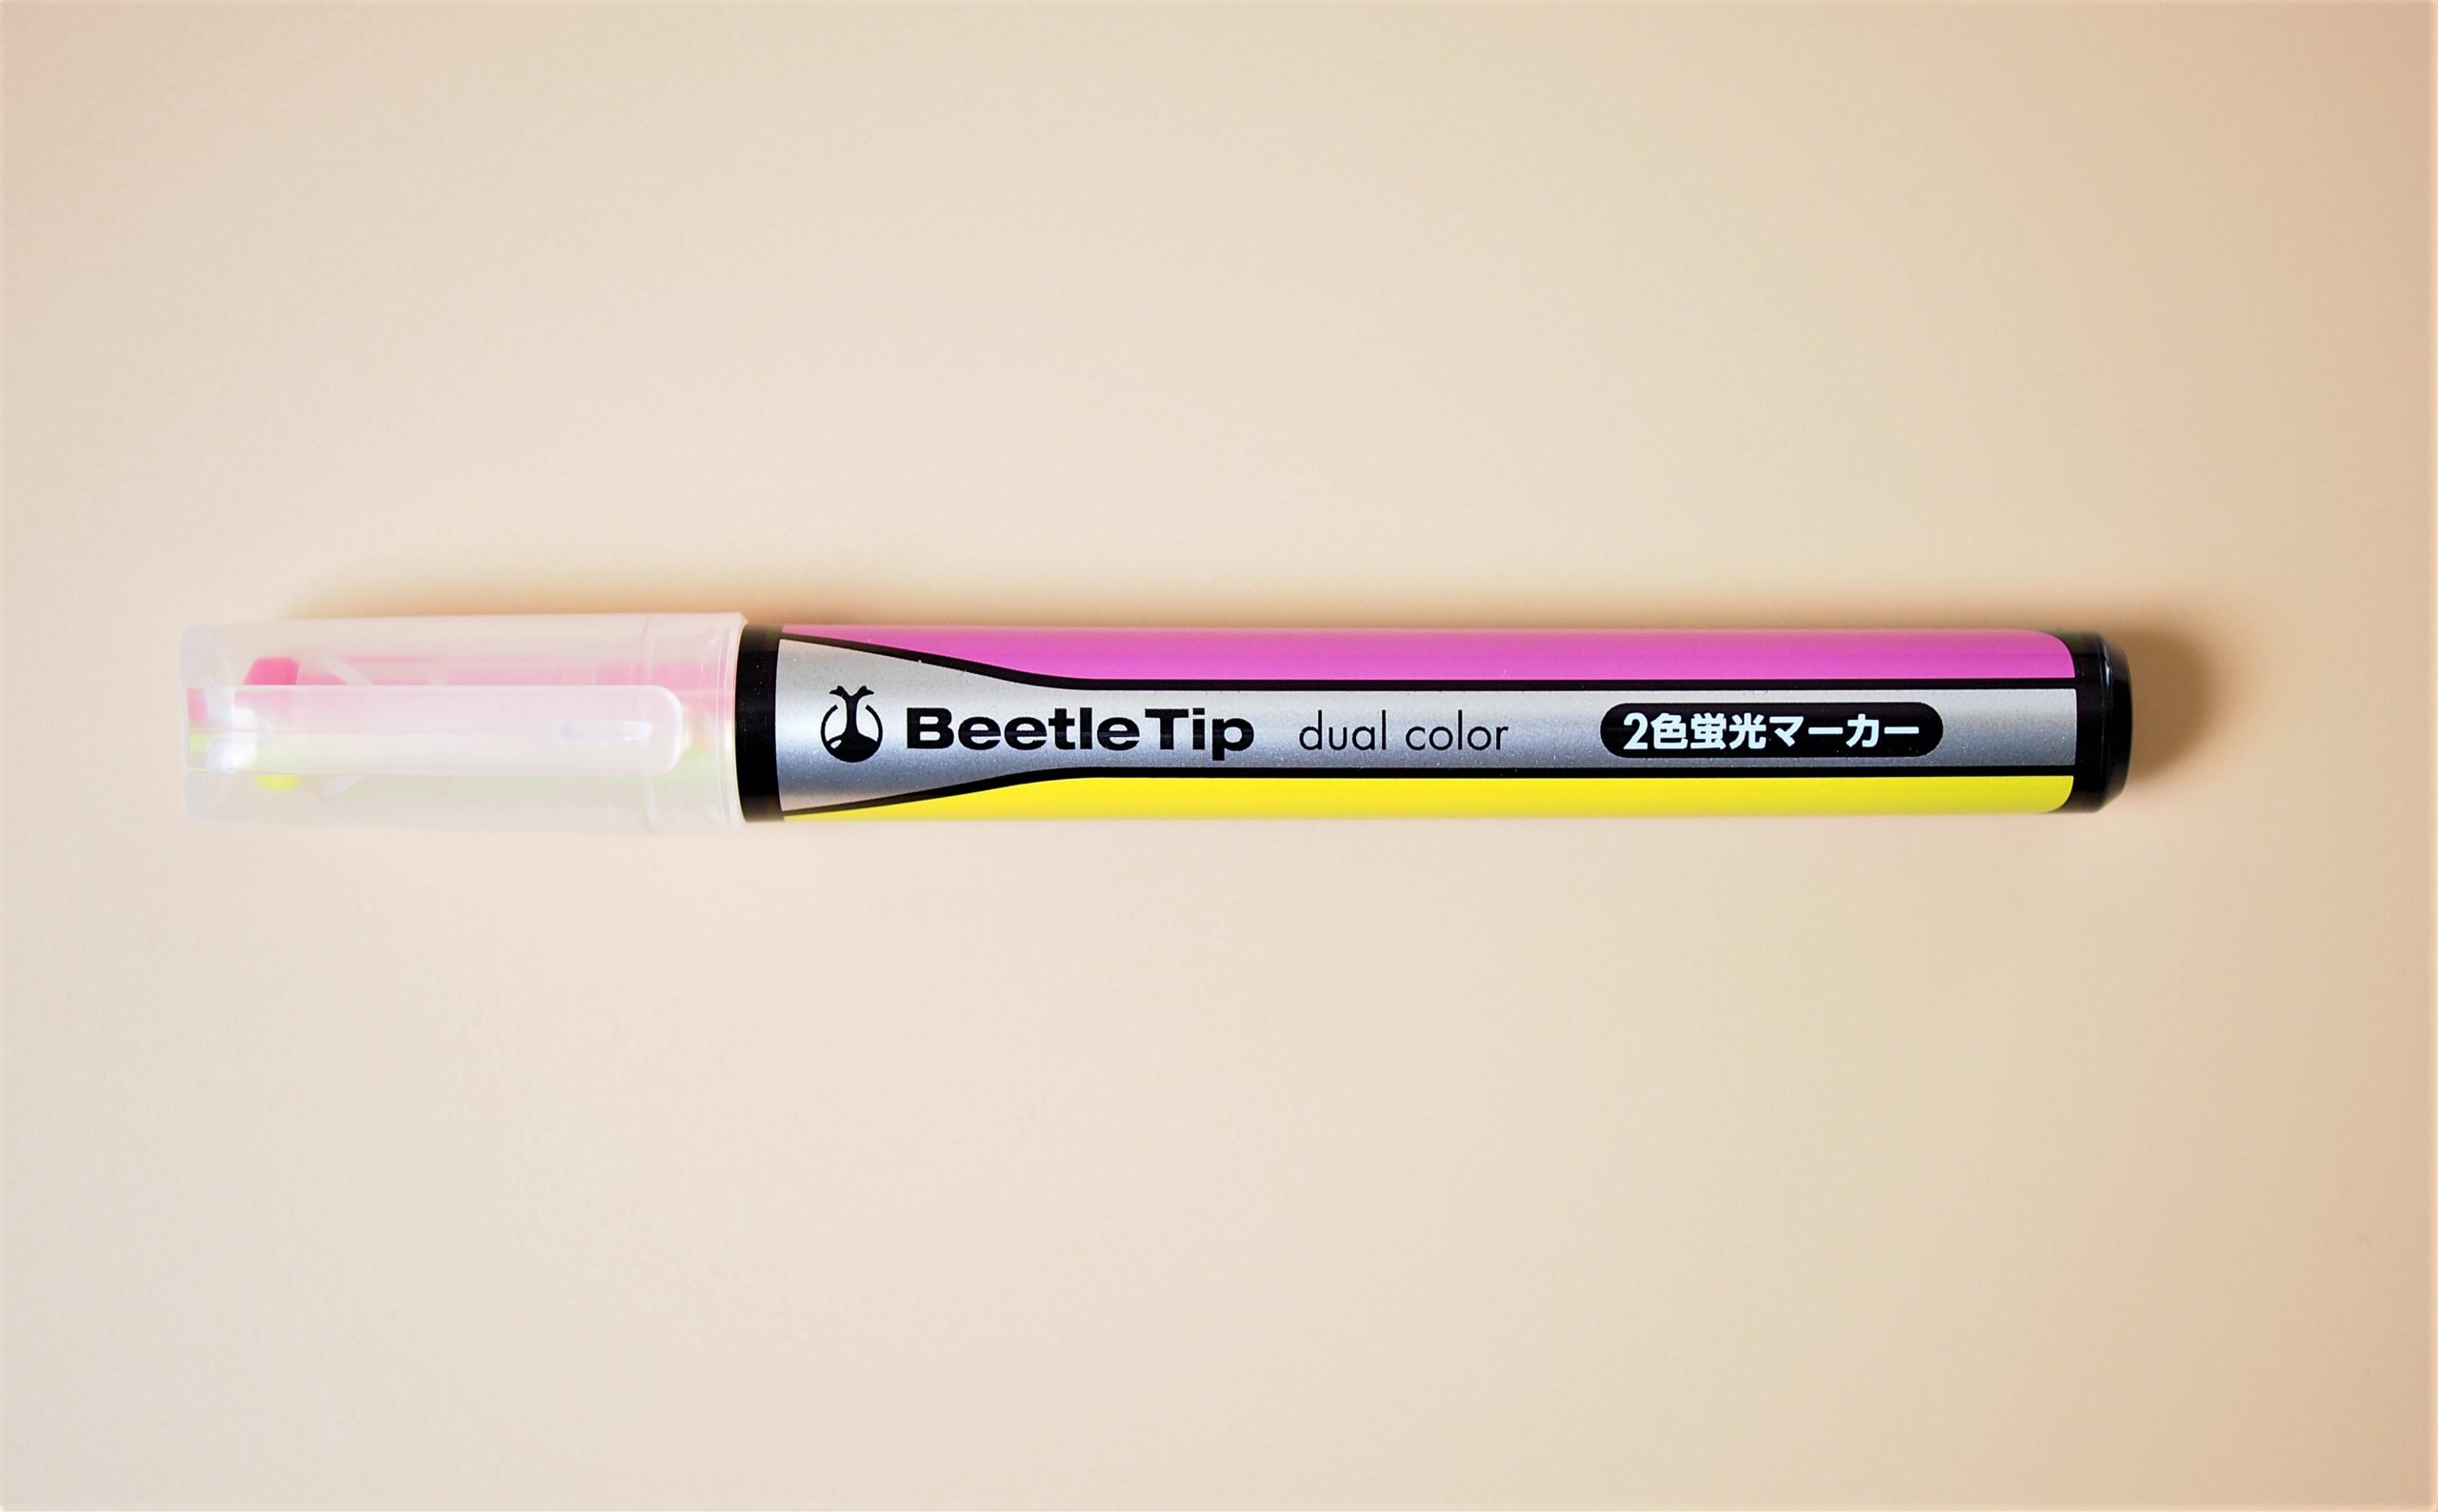 1本で2色使える蛍光ペン「ビートルティップ・デュアルカラー」を 